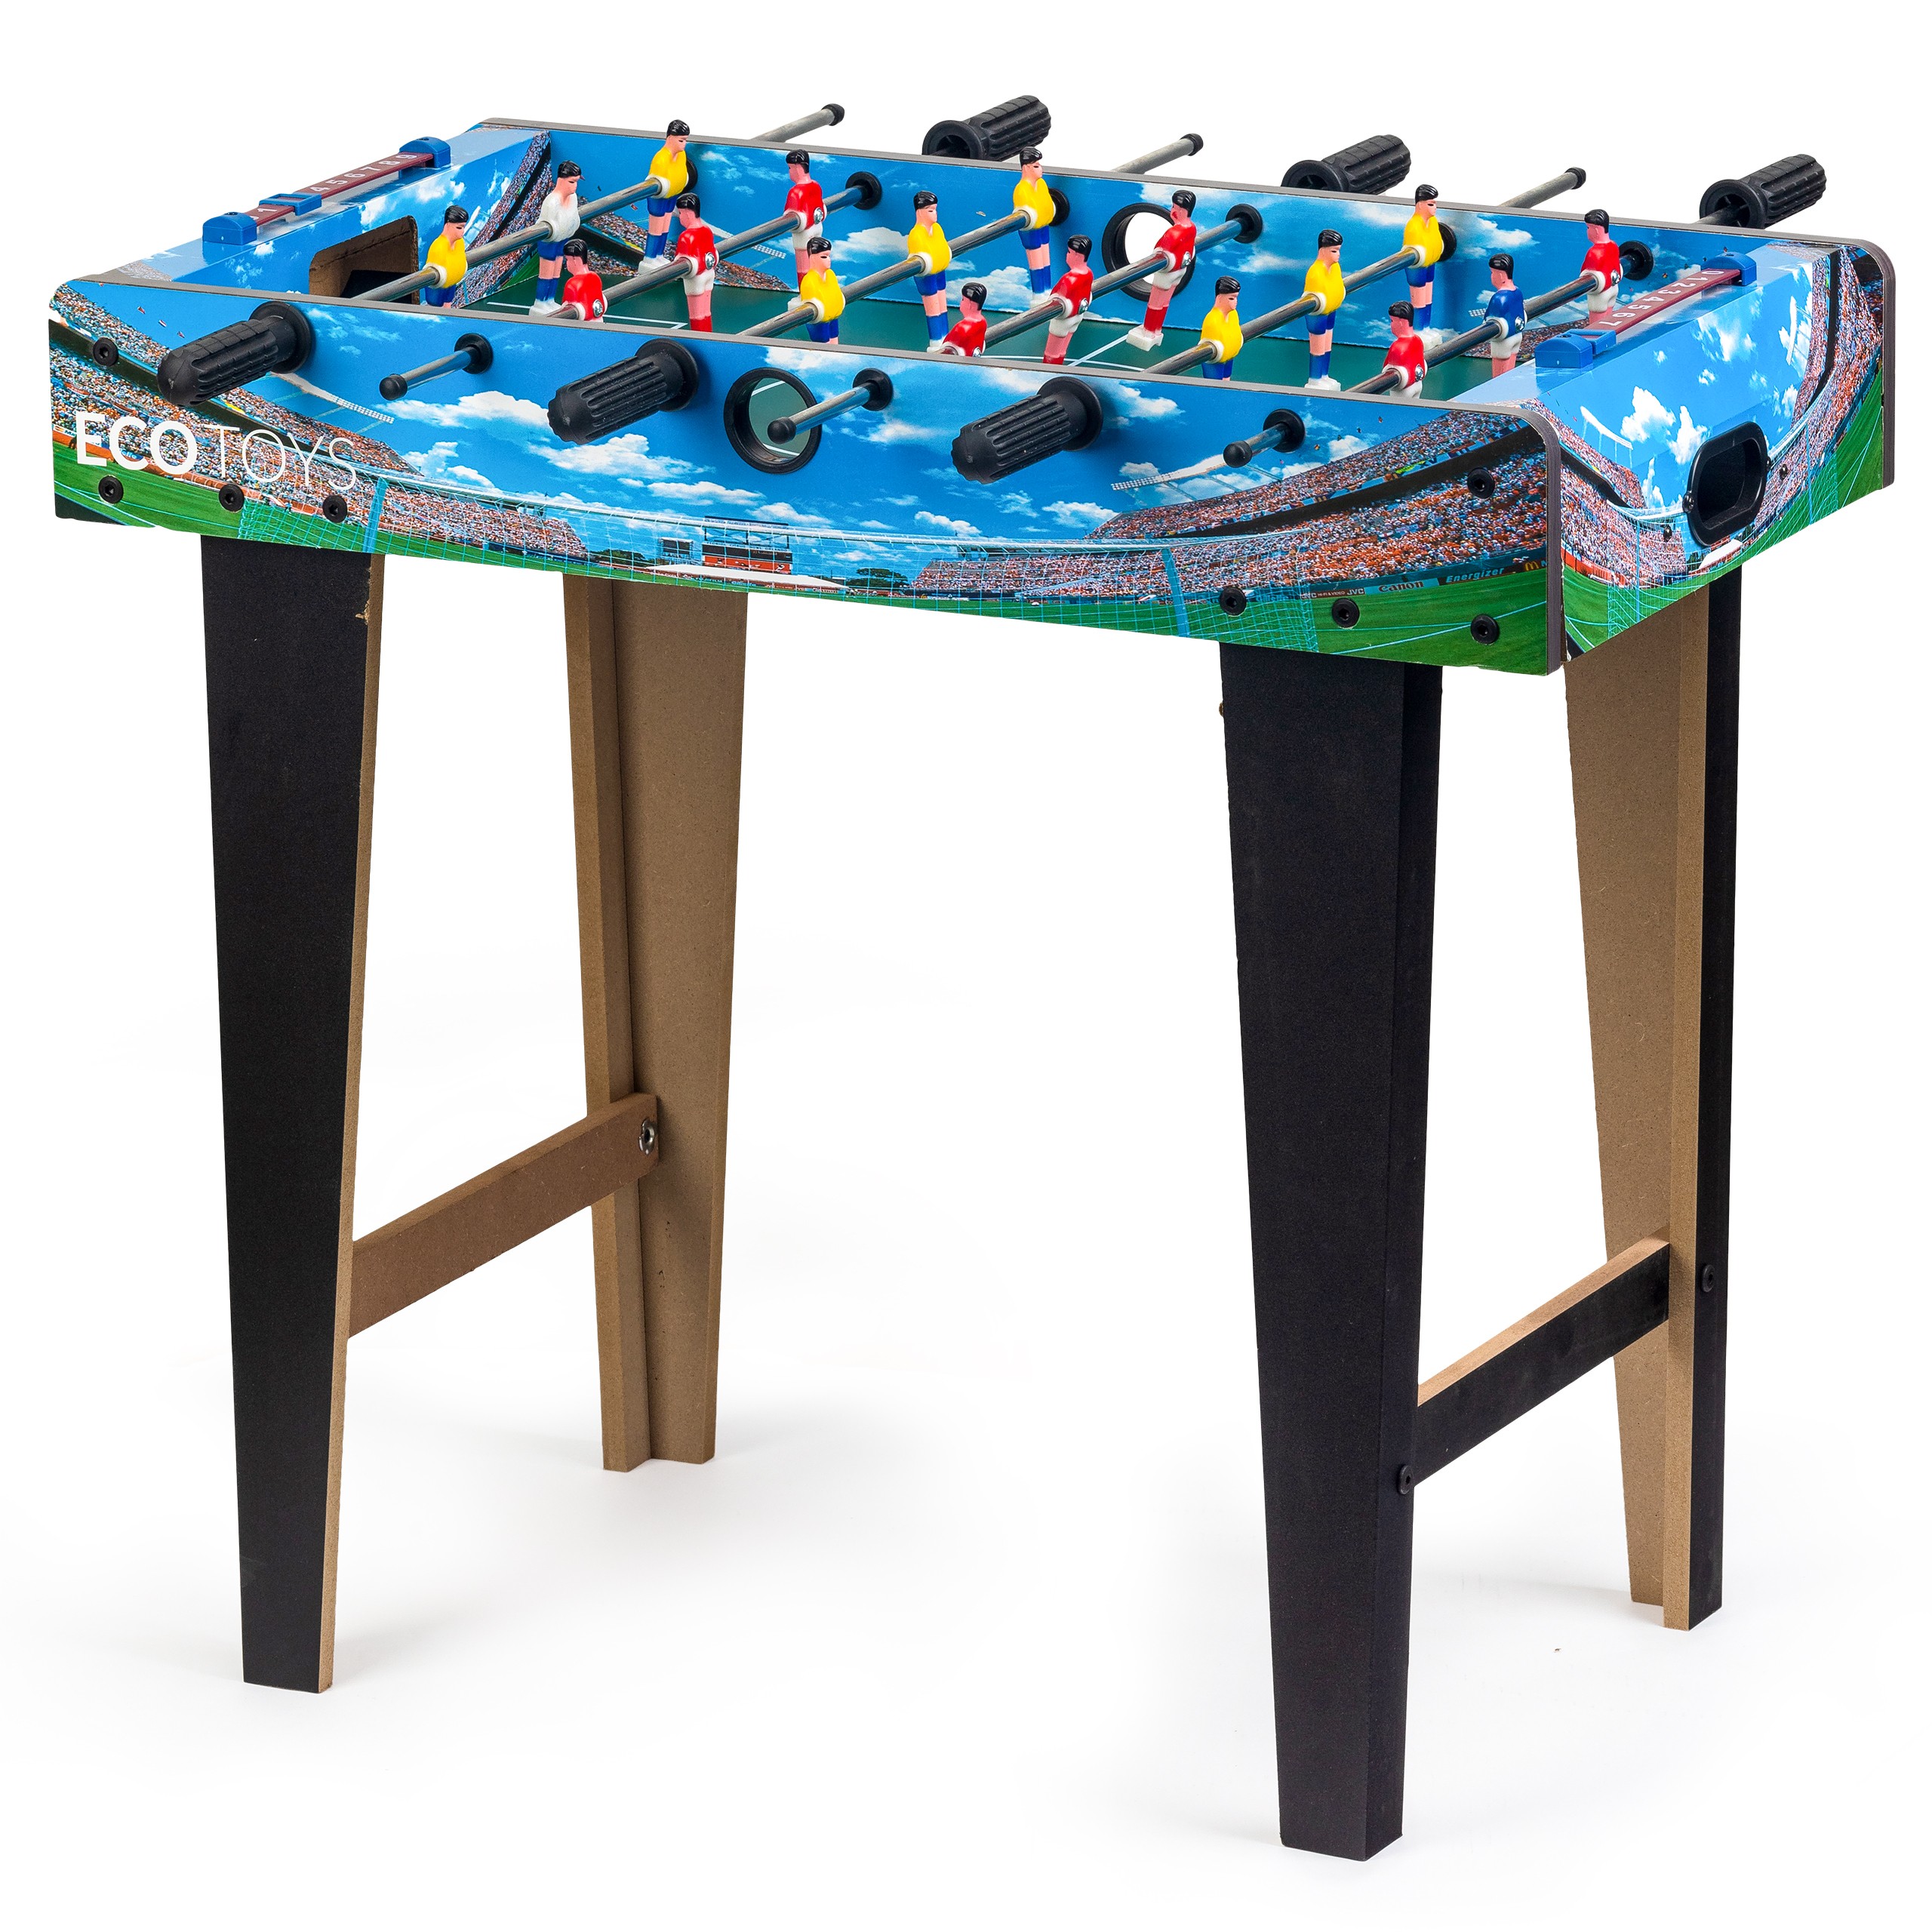 Fotbal de masă, masă de joc din lemn, dimensiuni: Ecotoys 69 x 36 cm